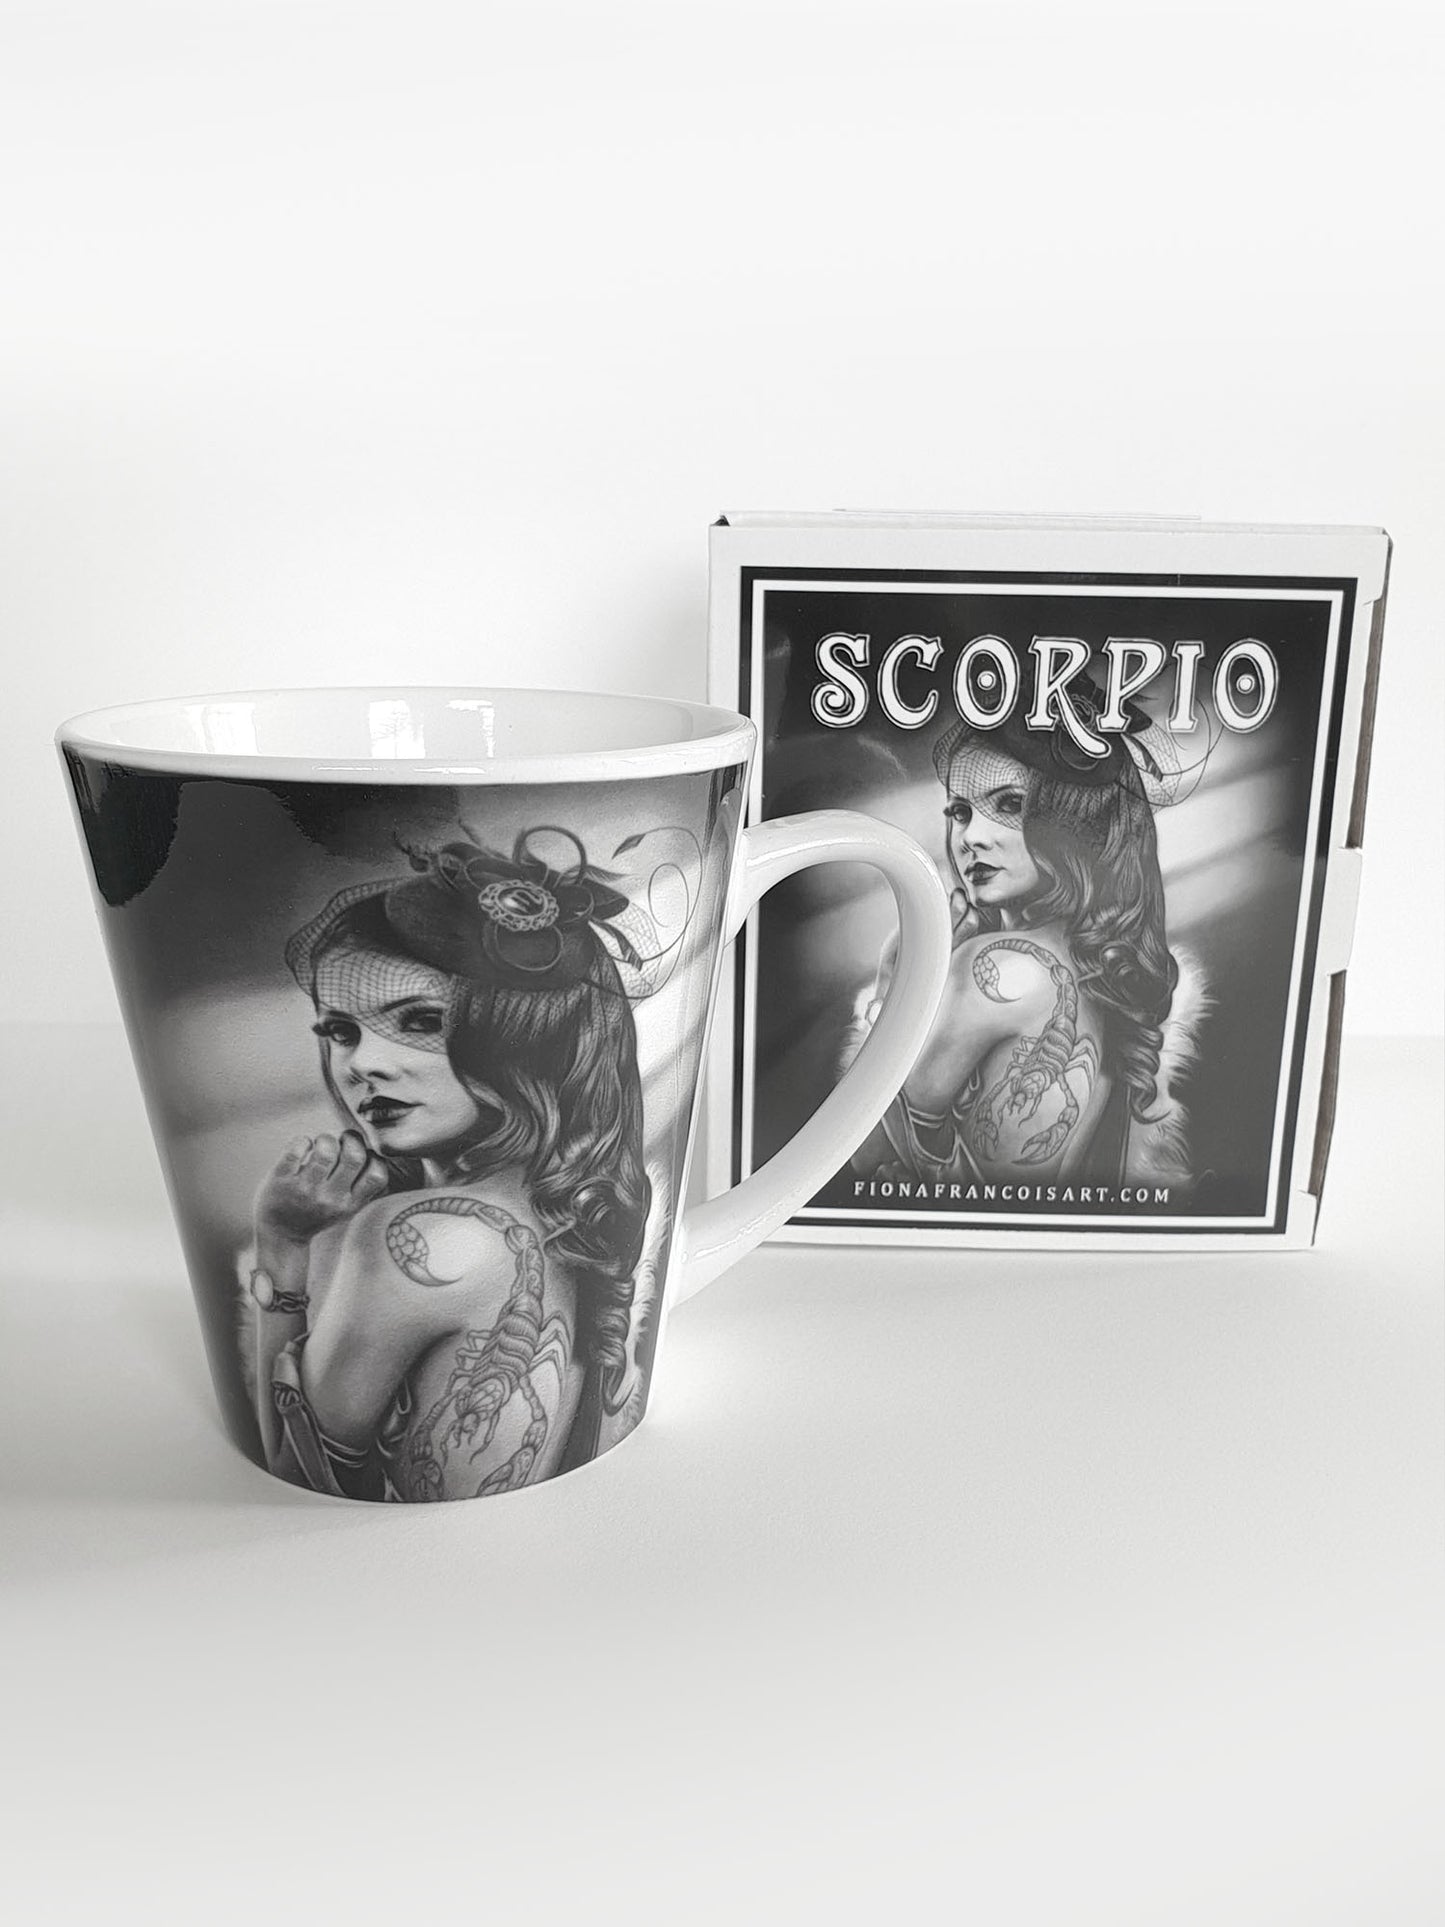 'Scorpio' ceramic mug